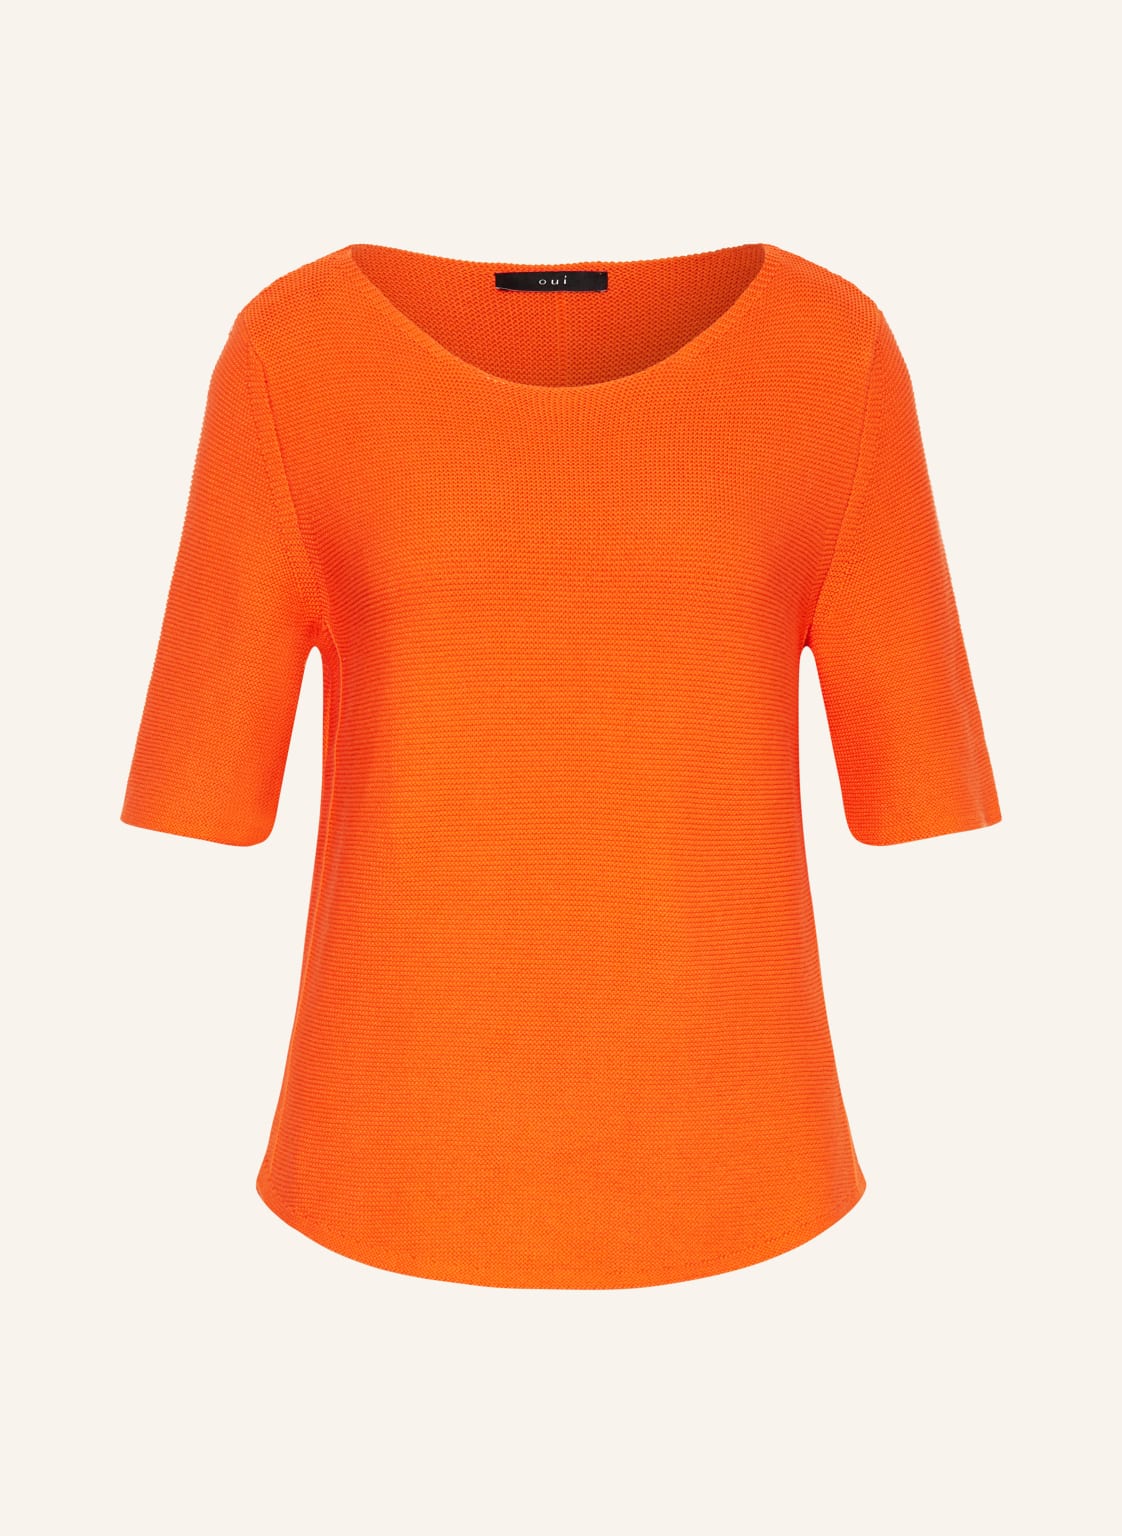 Oui Strickshirt orange von Oui